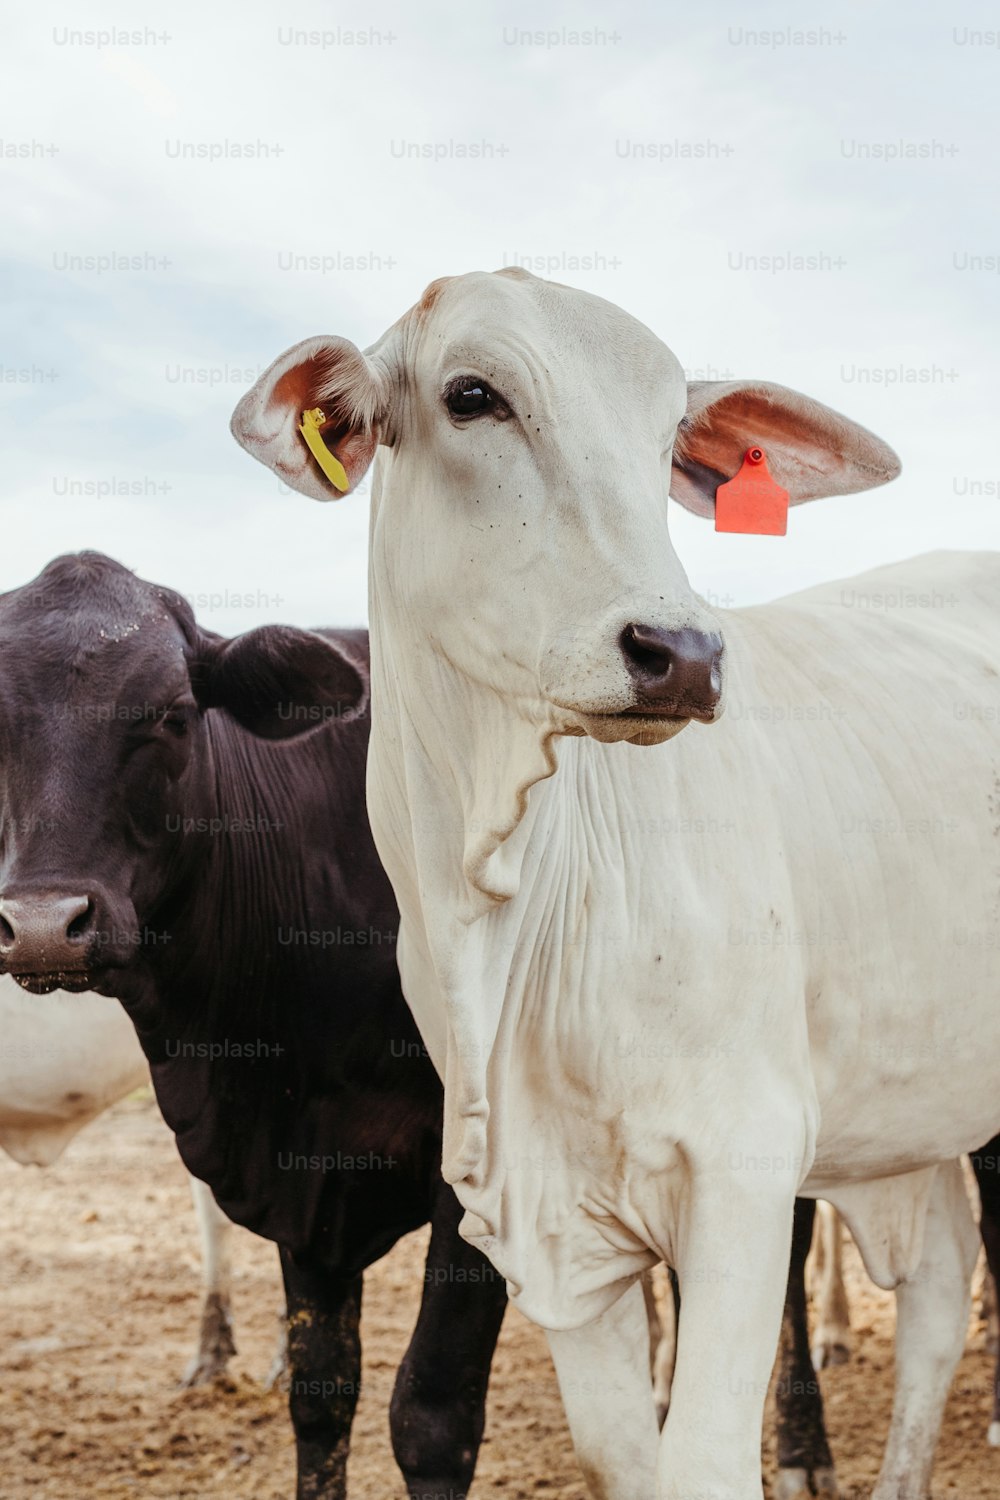 un couple de vaches debout l’une à côté de l’autre